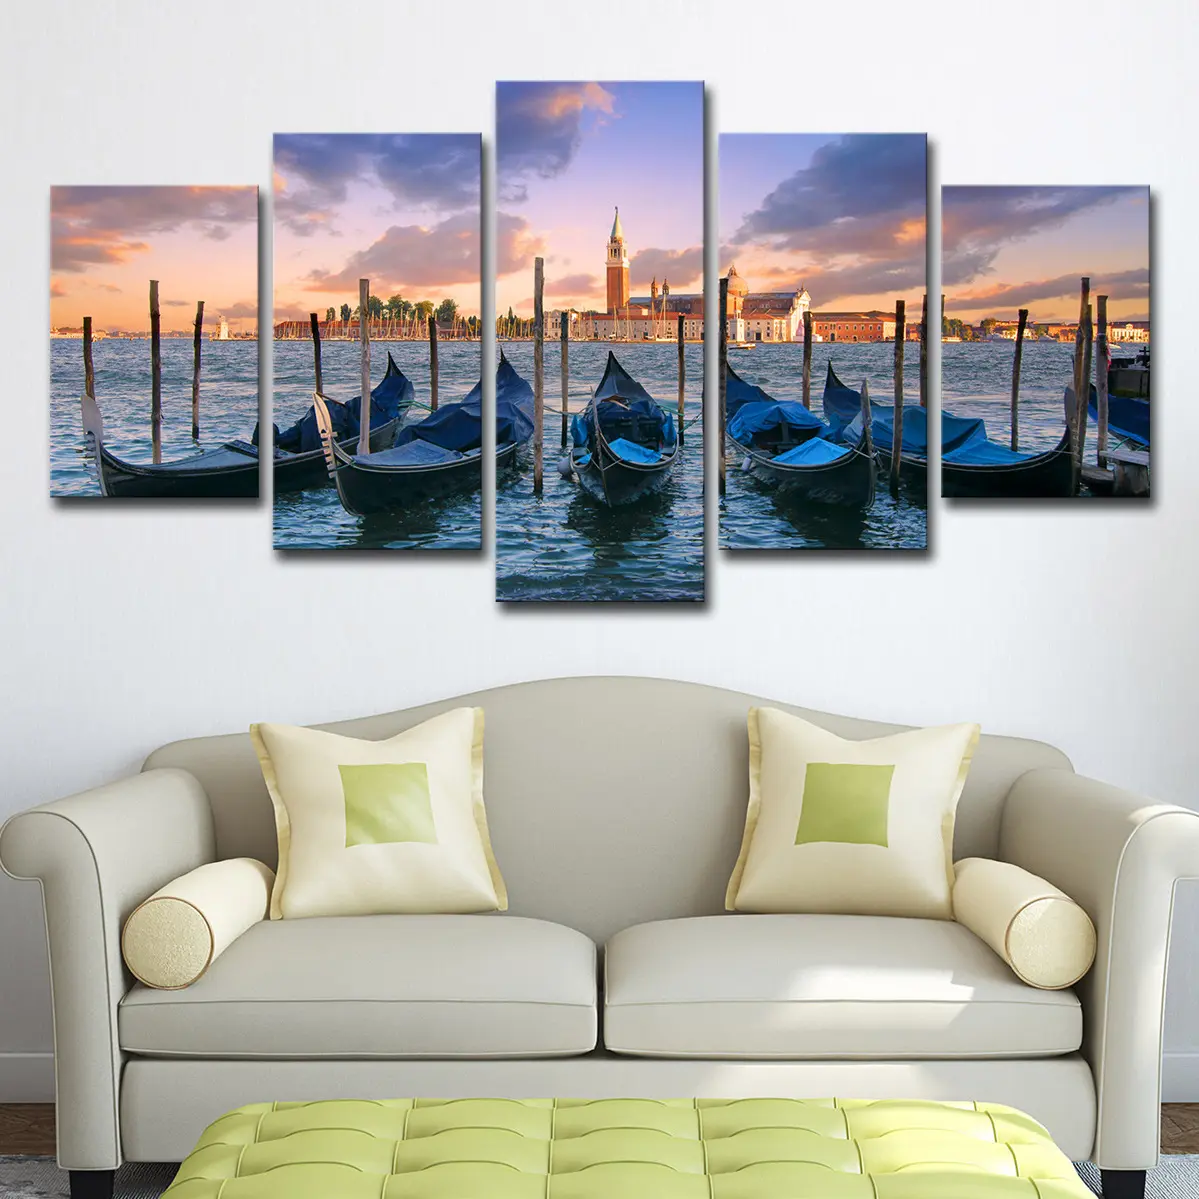 5 panel tampilan laut perahu biru Poster gambar pinggir pantai Kota Matahari terbenam pemandangan Modern kanvas cetak seni untuk ruang makan dekorasi